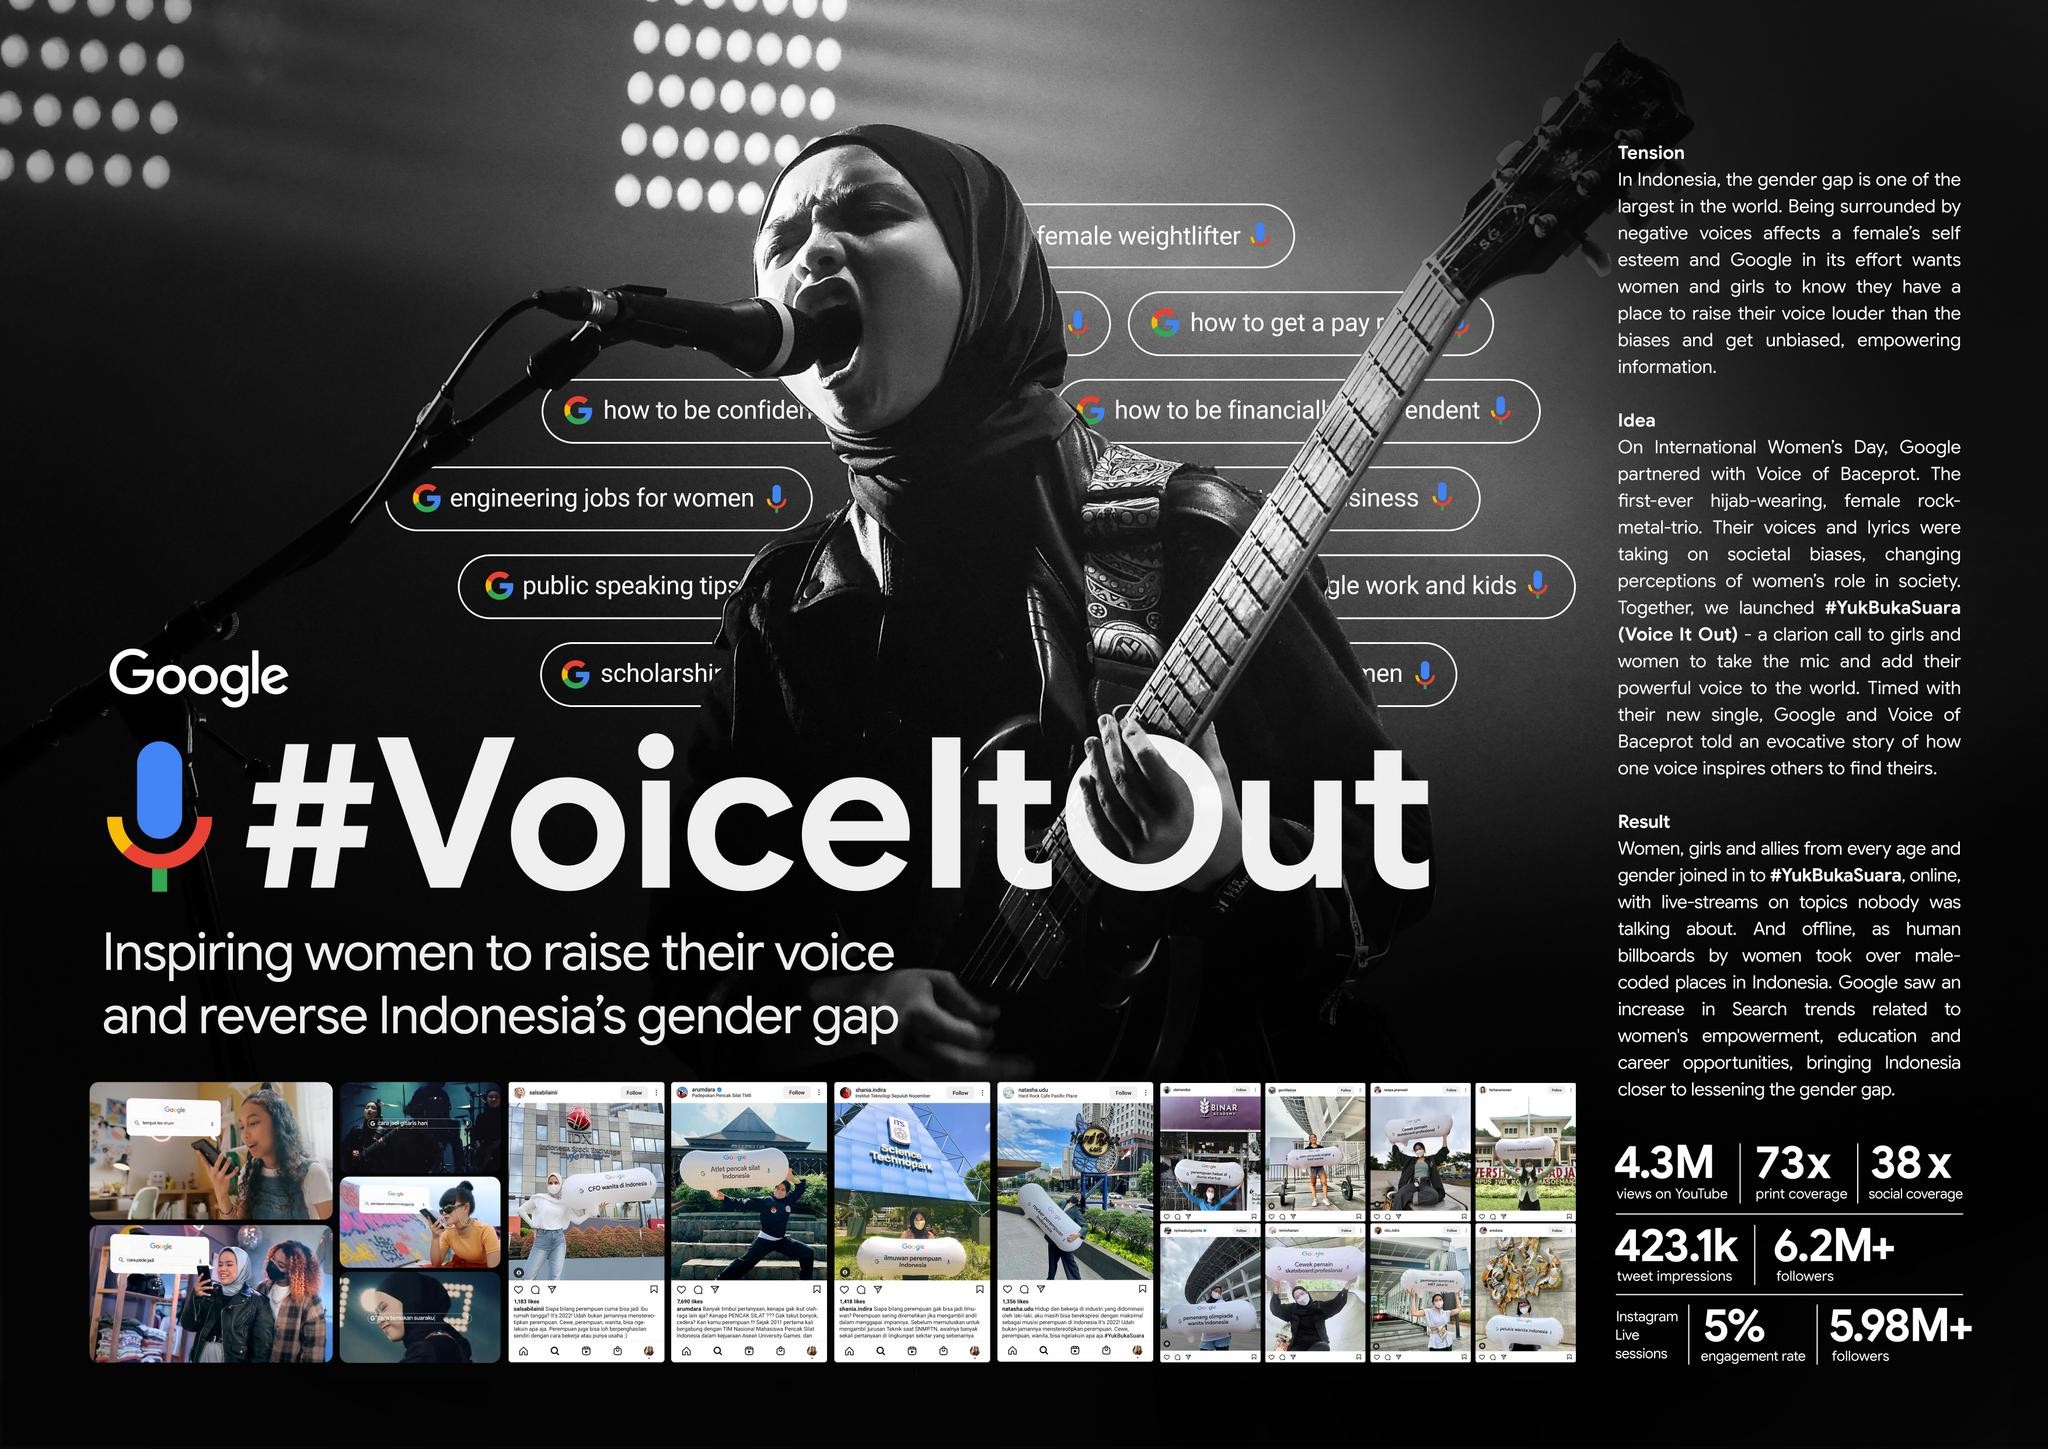 Google: Voice It Out